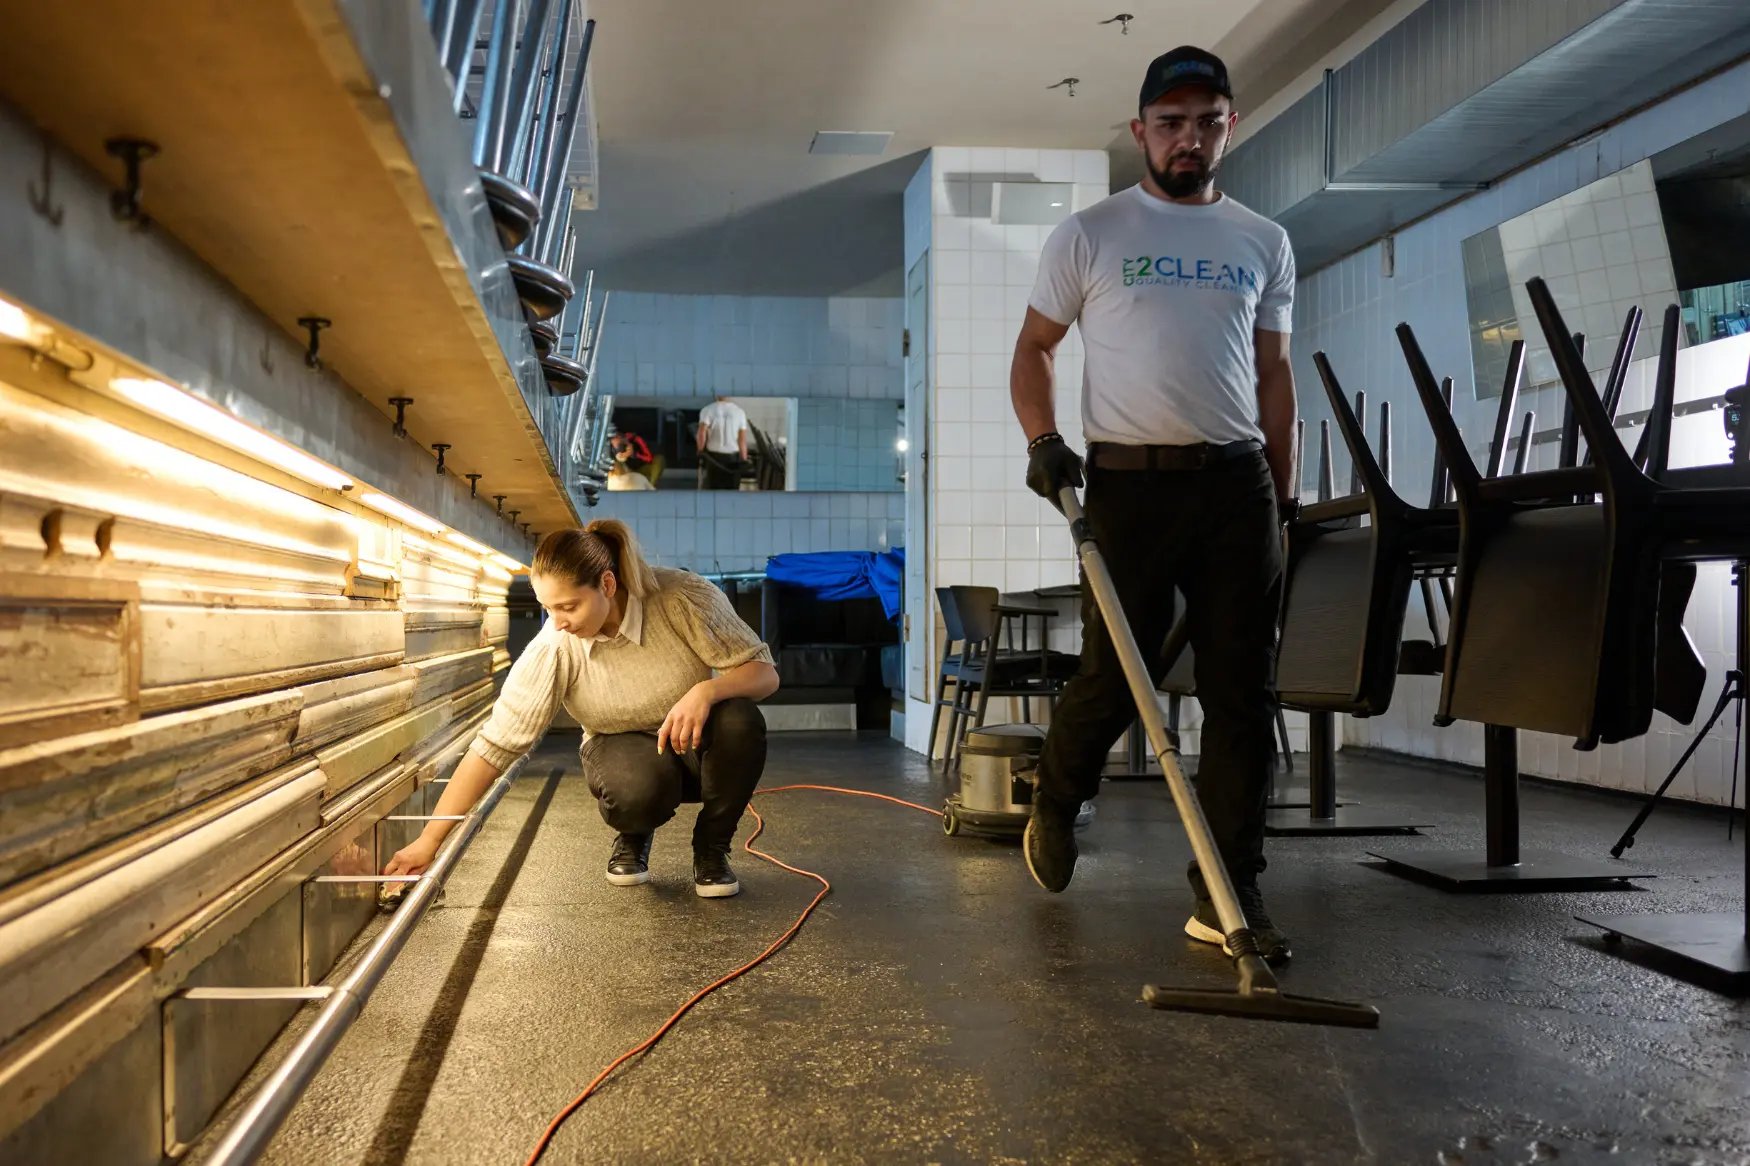 Et City2Clean-team udfører rengøring i en kendt café i København. Rengøringsarbejdet udføres med præcision og kærlighed.